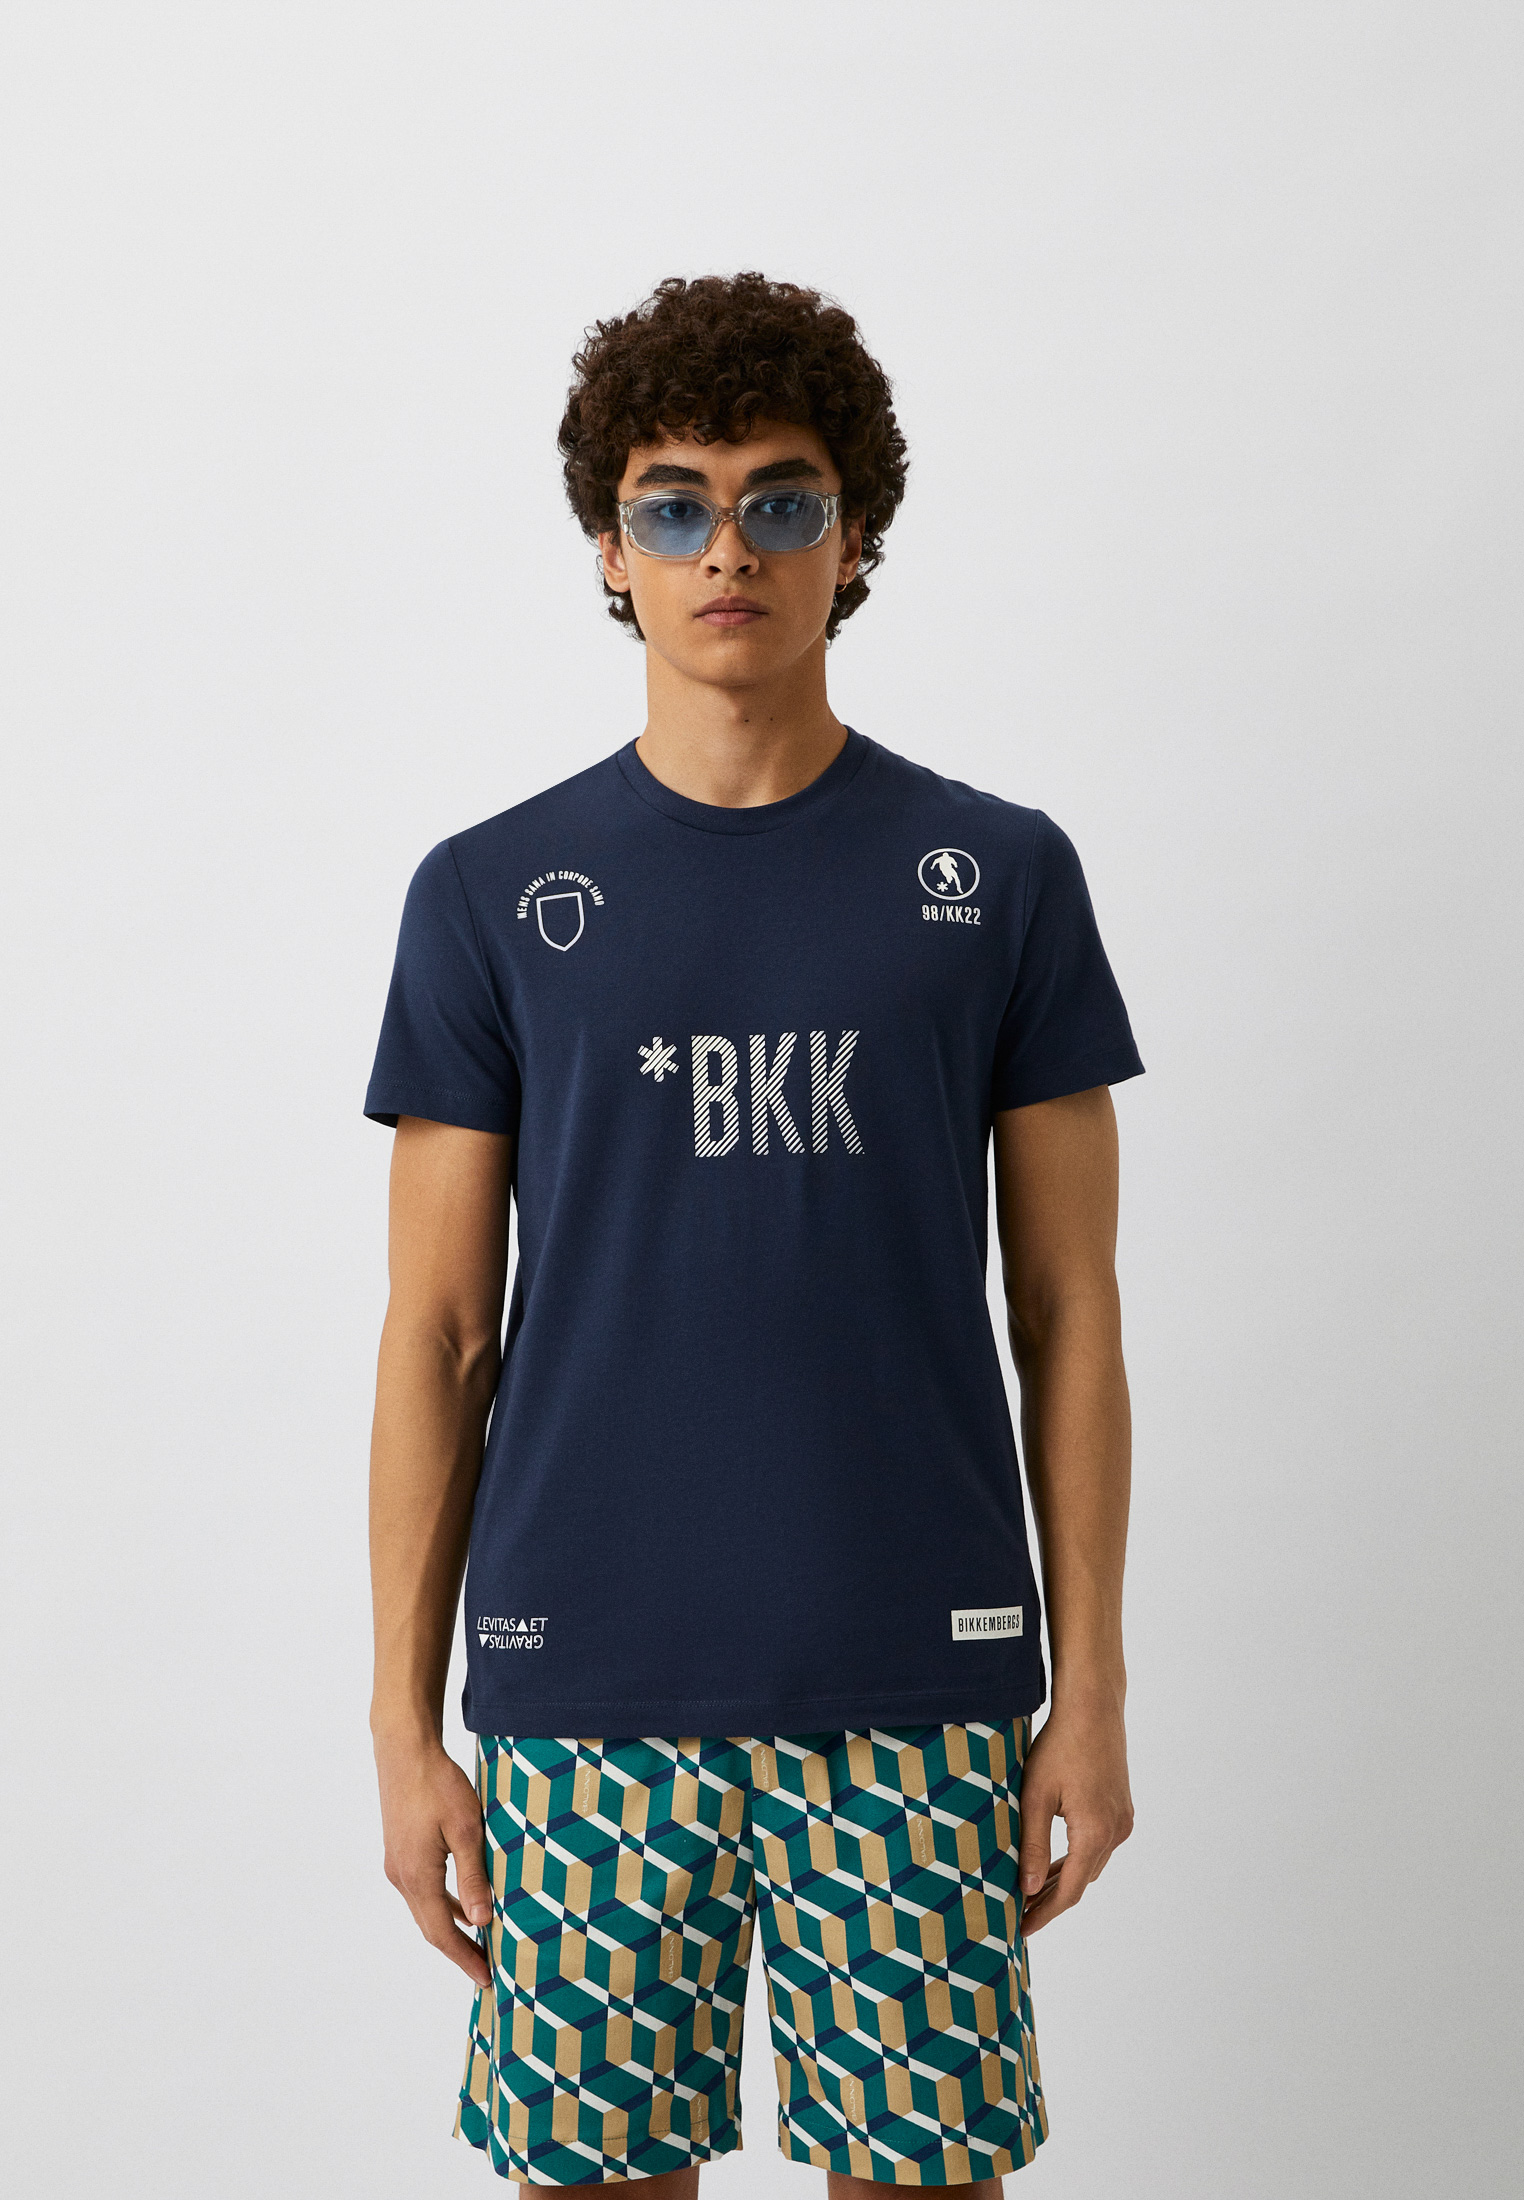 Мужская футболка Bikkembergs (Биккембергс) C 4 101 2F E 1811